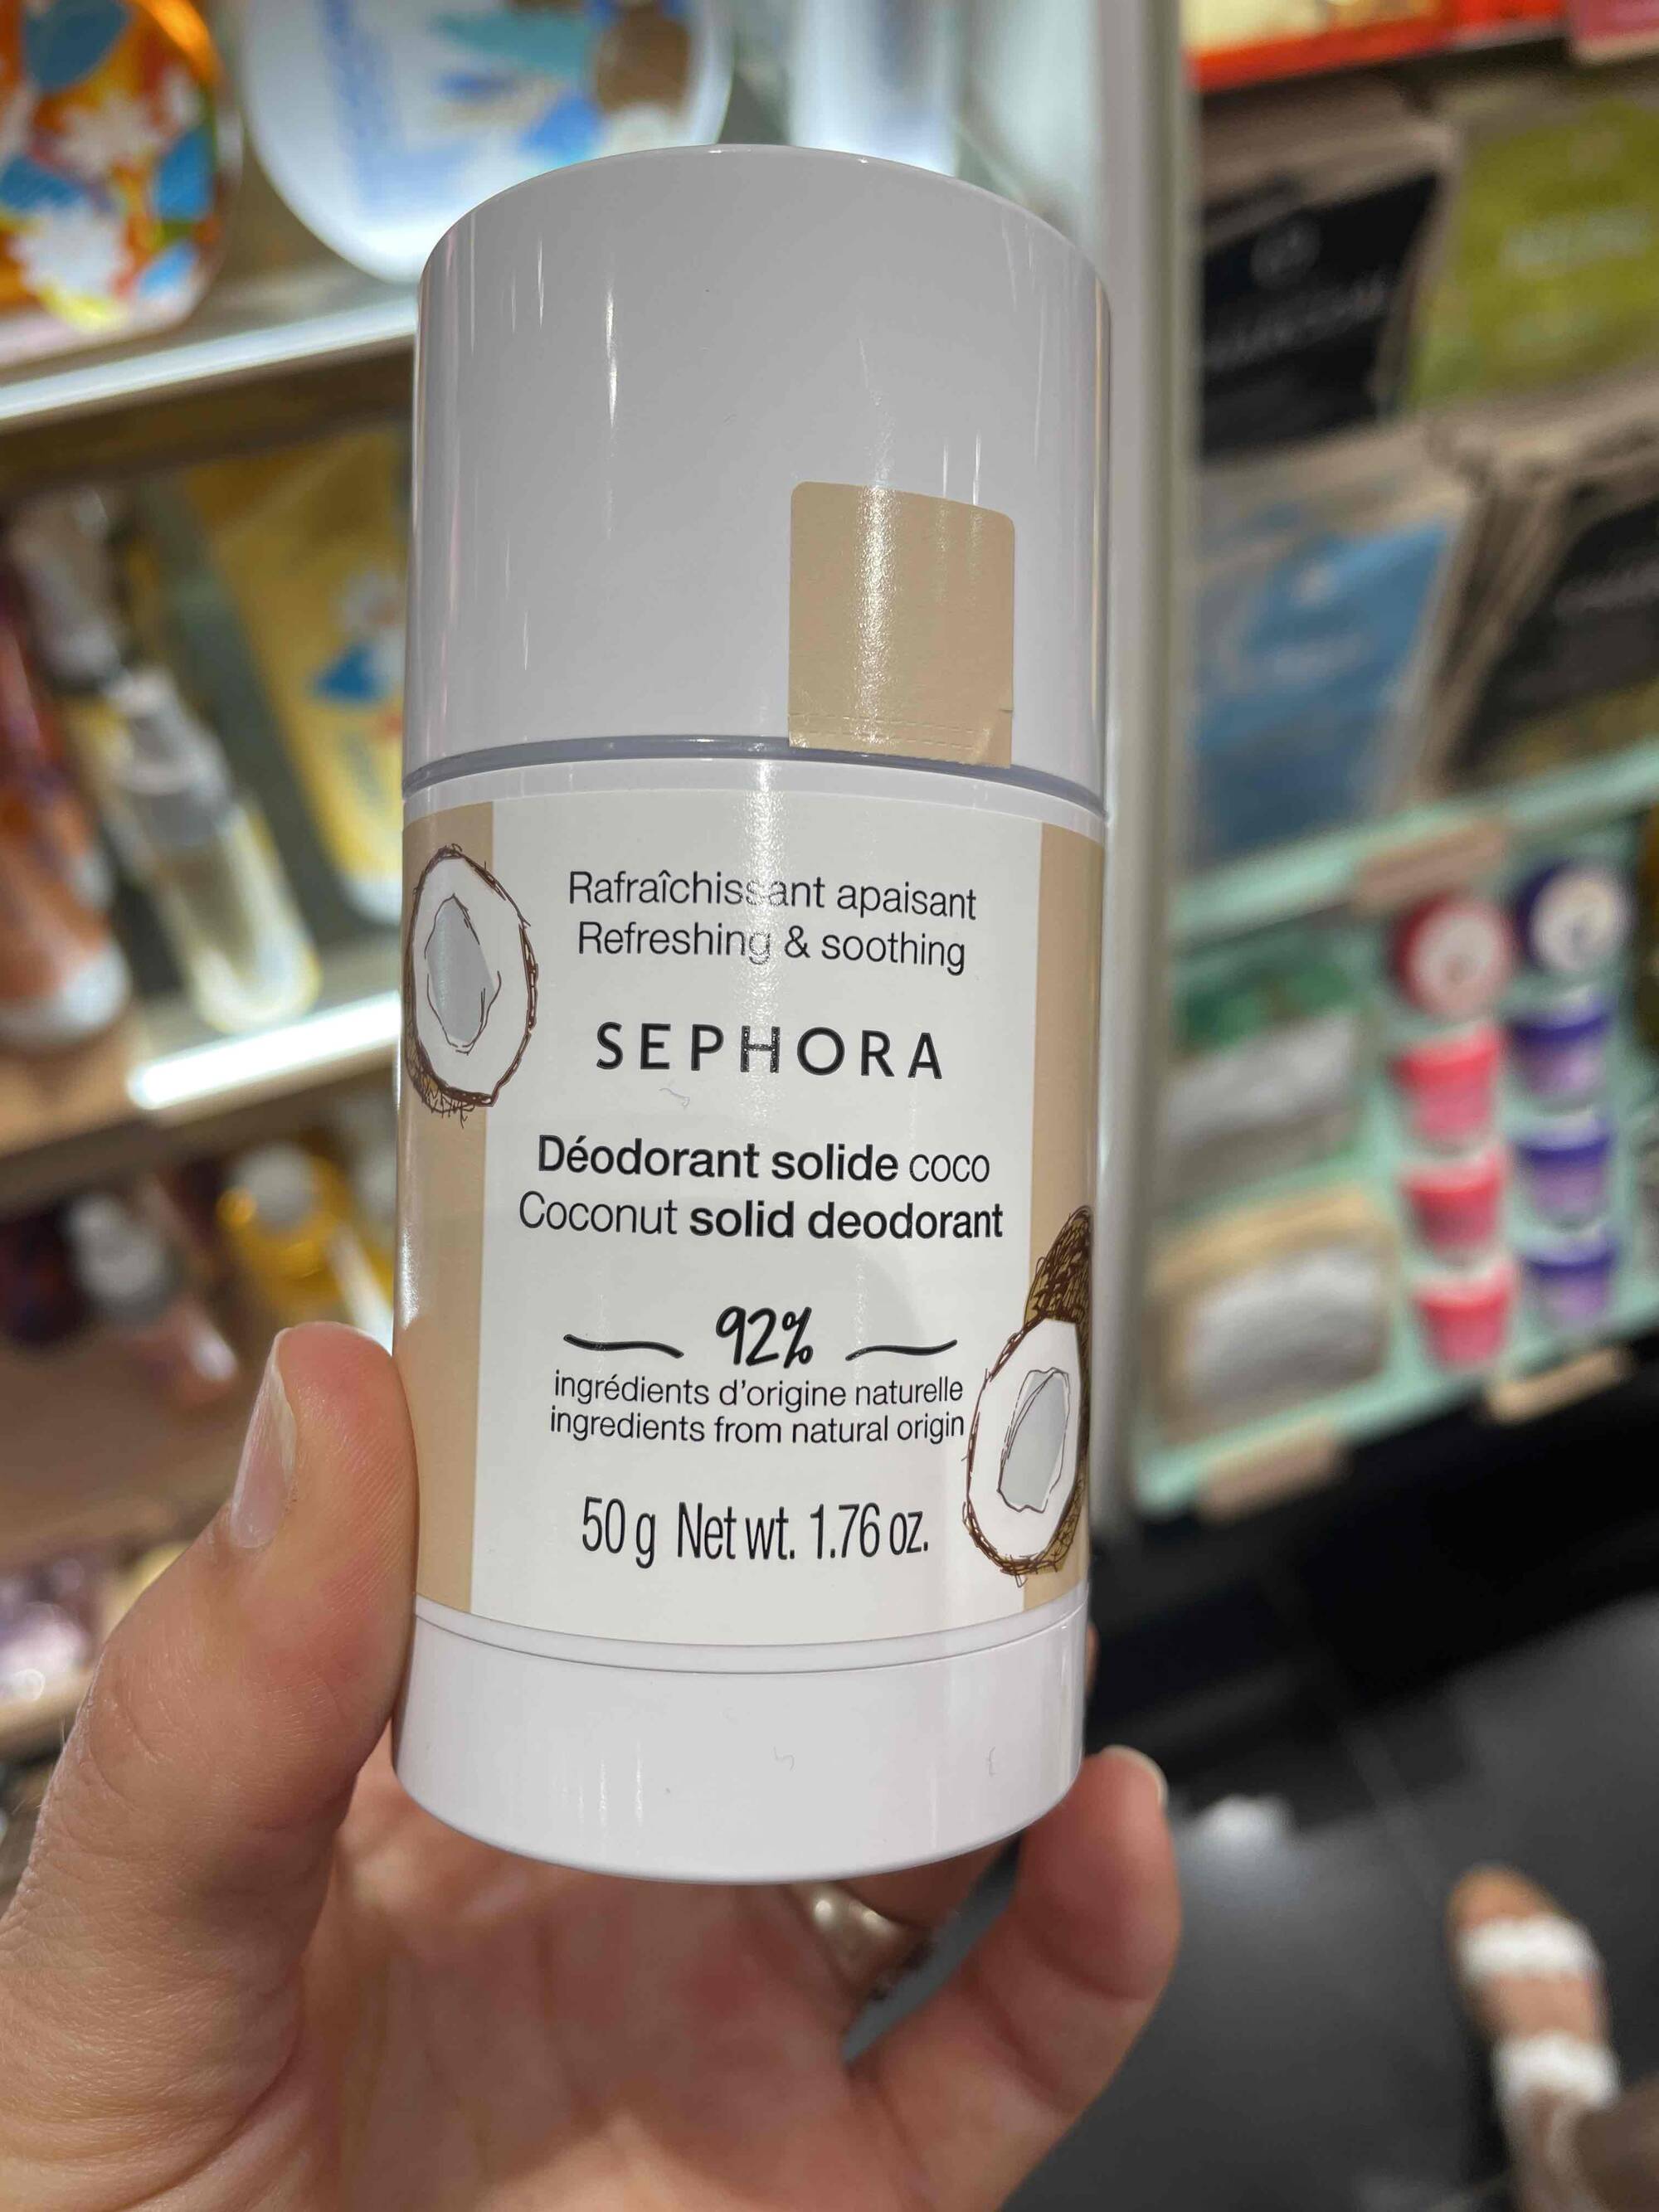 SEPHORA - Deodorant solide coco